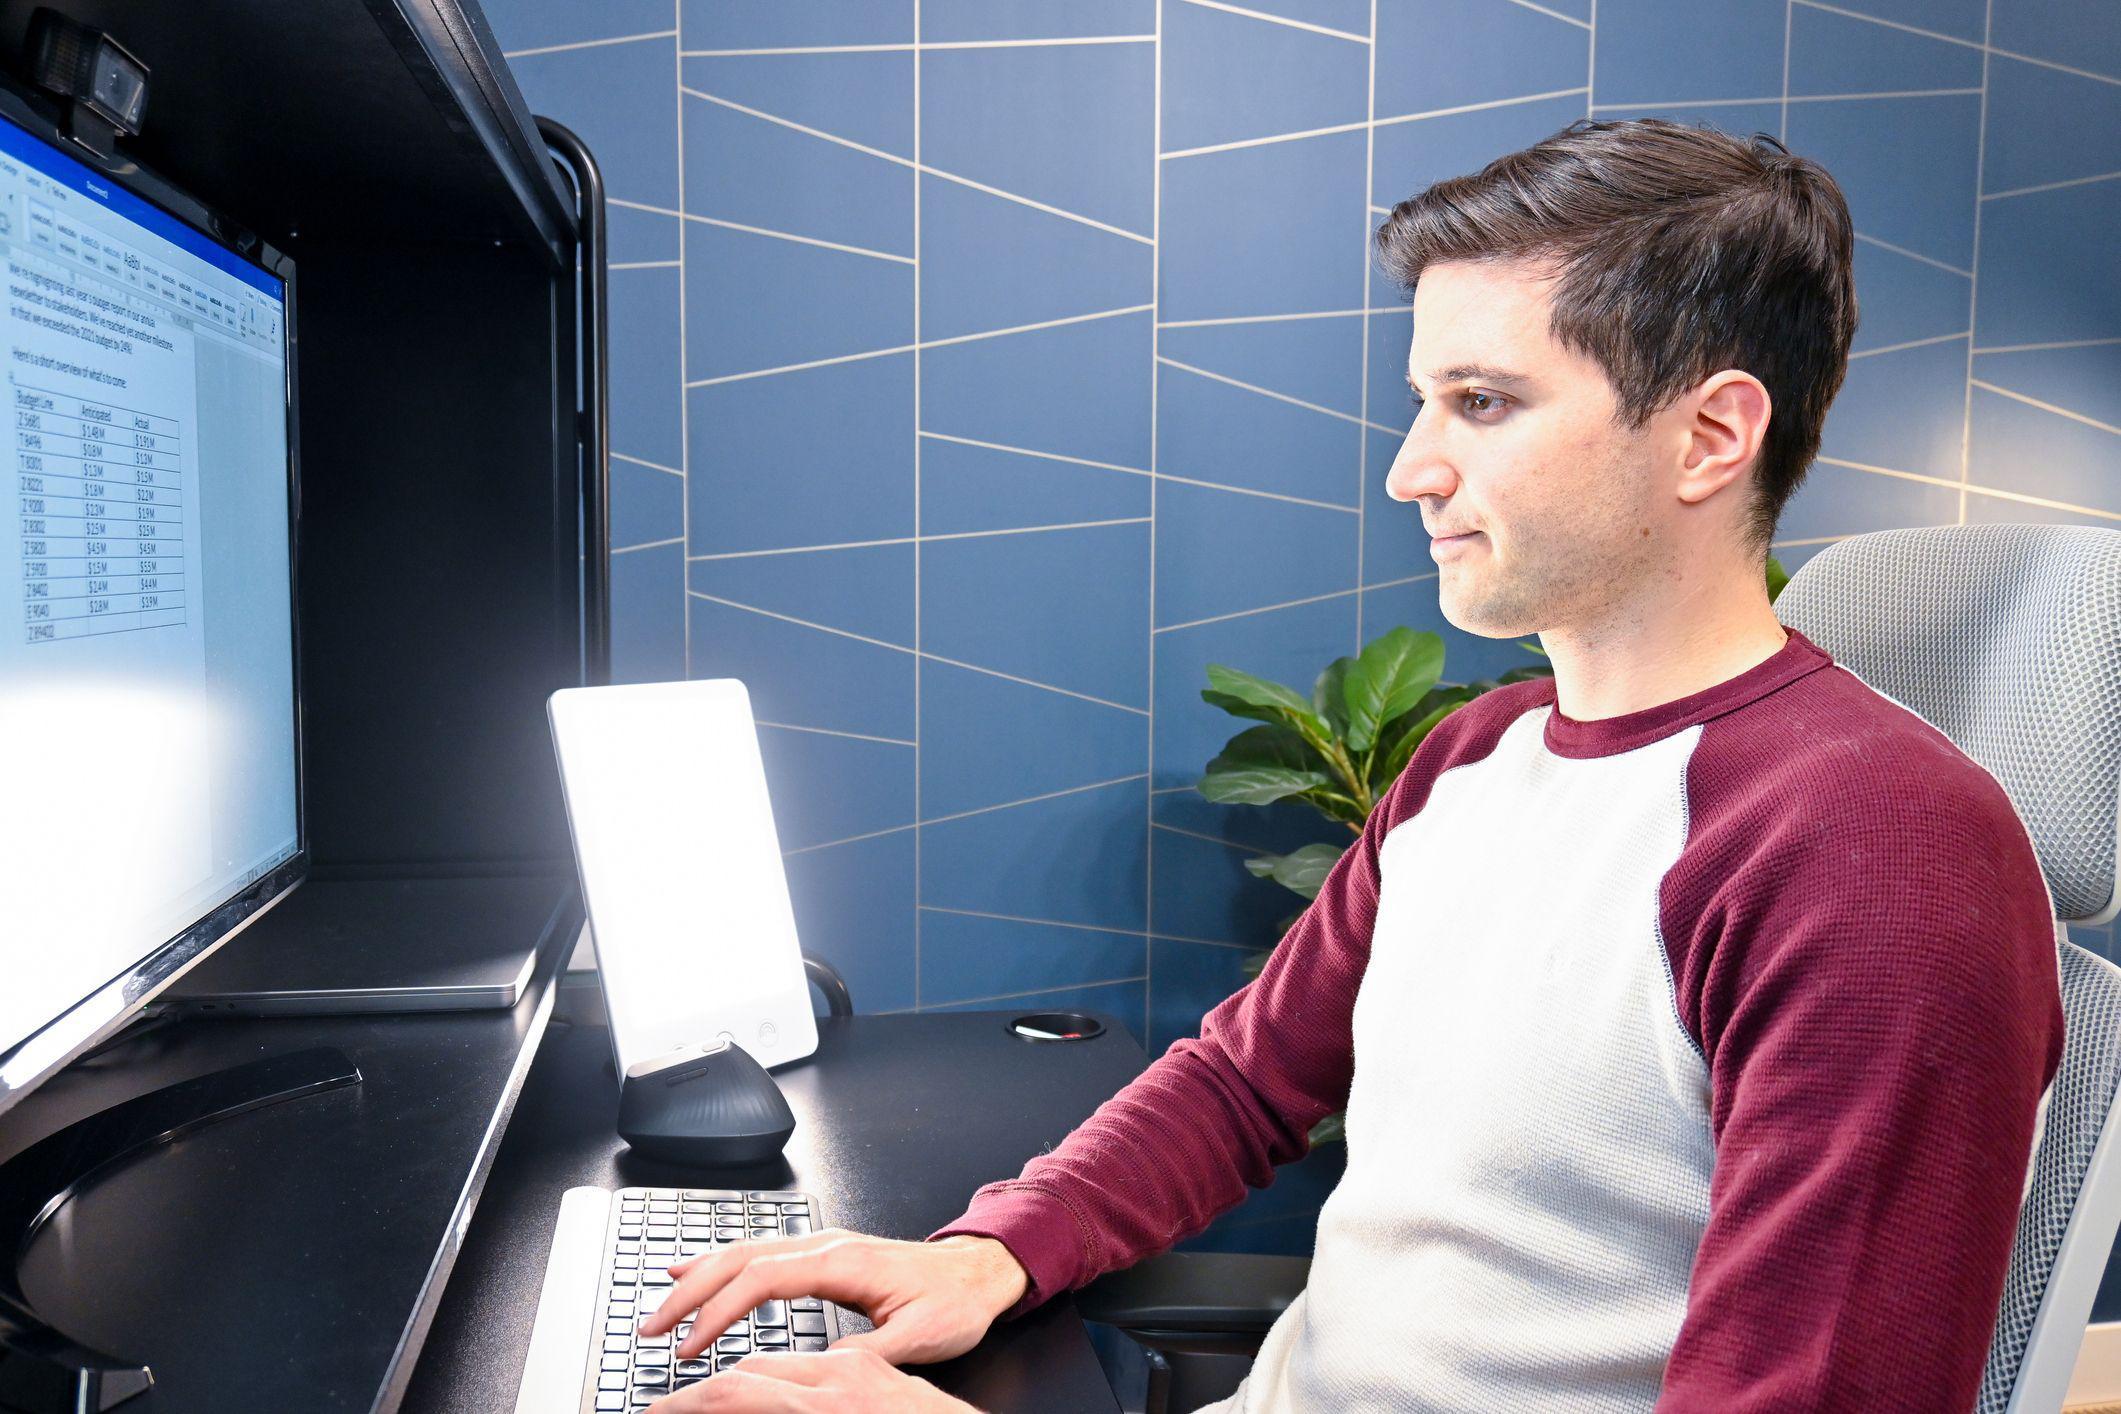 Jovem trabalha no computador com luz terapêutica ao lado